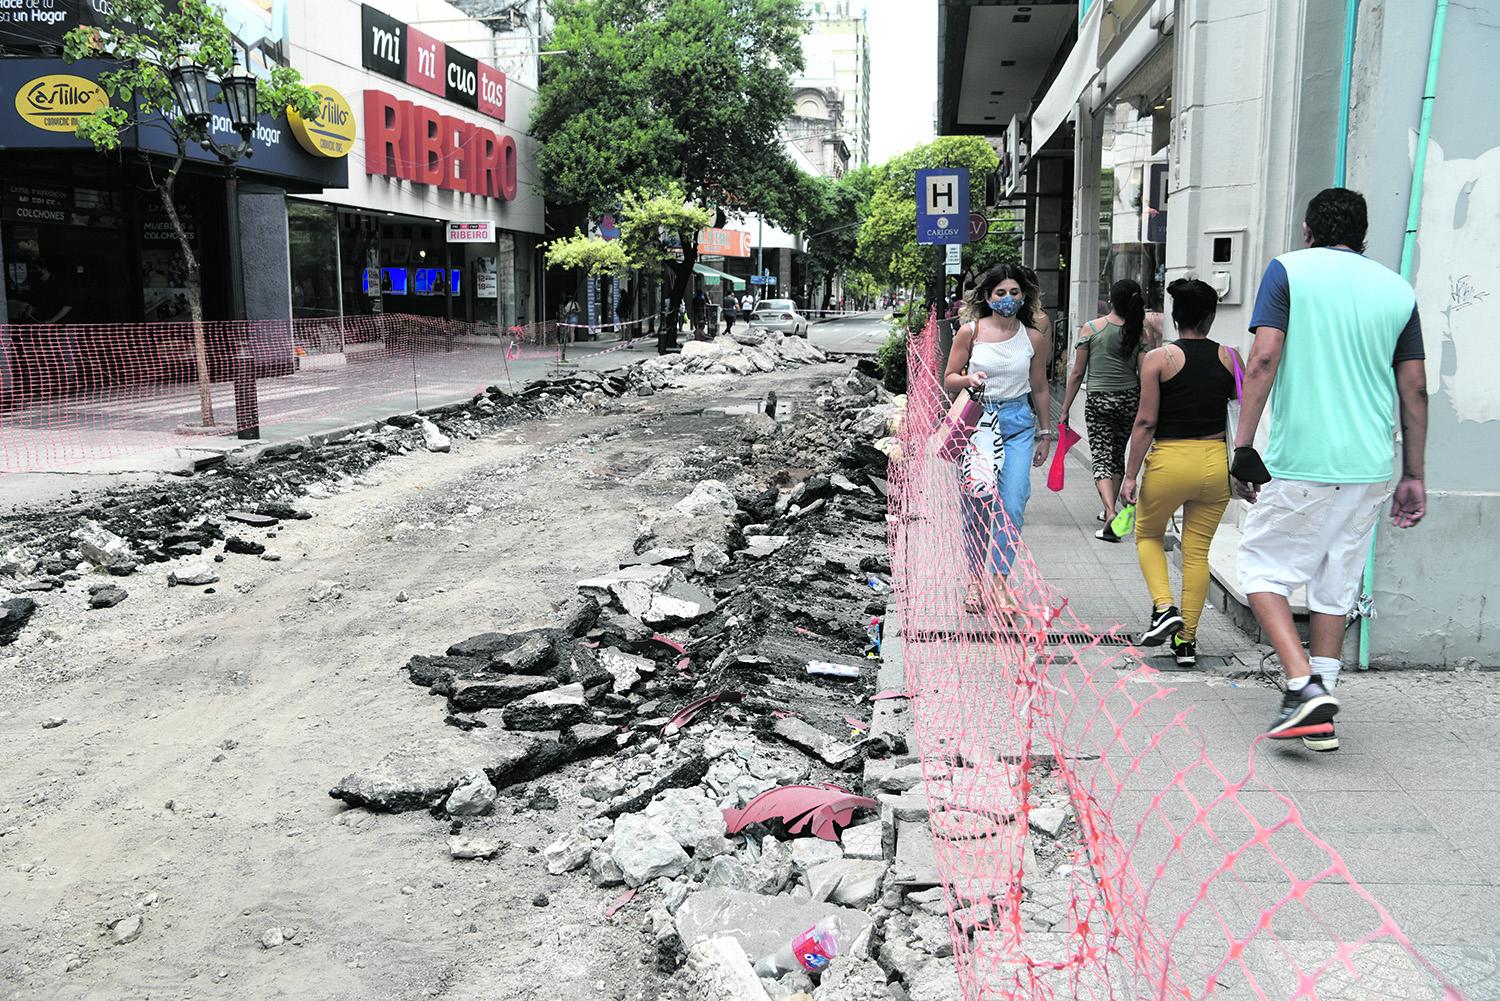 CAMBIOS. “La 25”, entre Córdoba y San Juan, dejará atrás las veredas angostas: habrá más espacio para pasear.